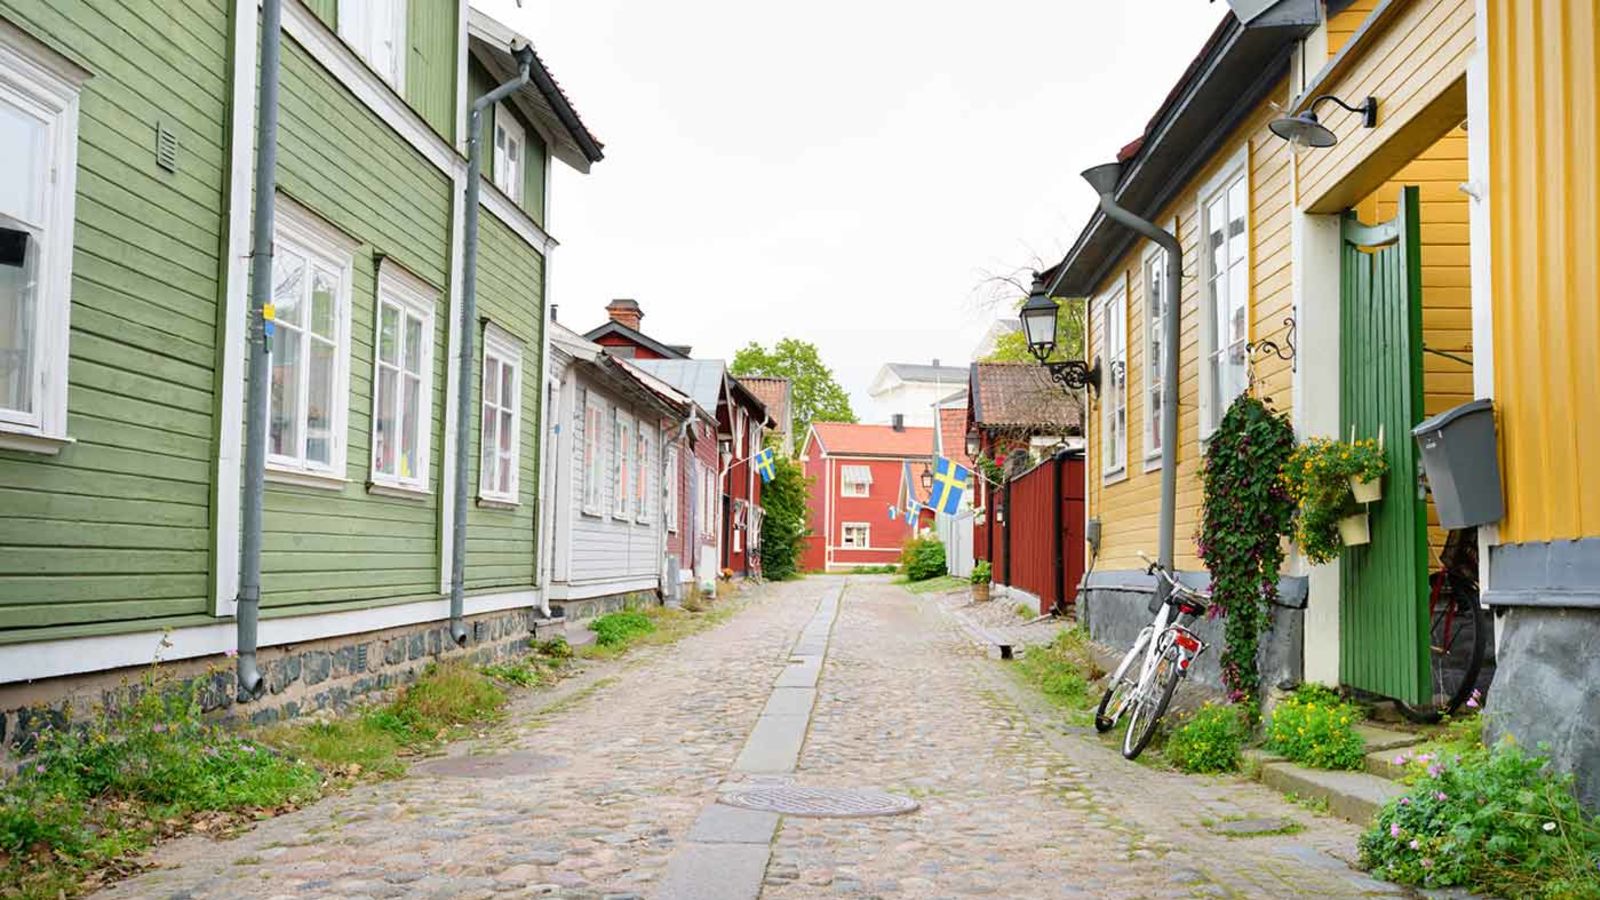 Promernera lämngs med de gamla husen i Gävles äldsta kvarter 